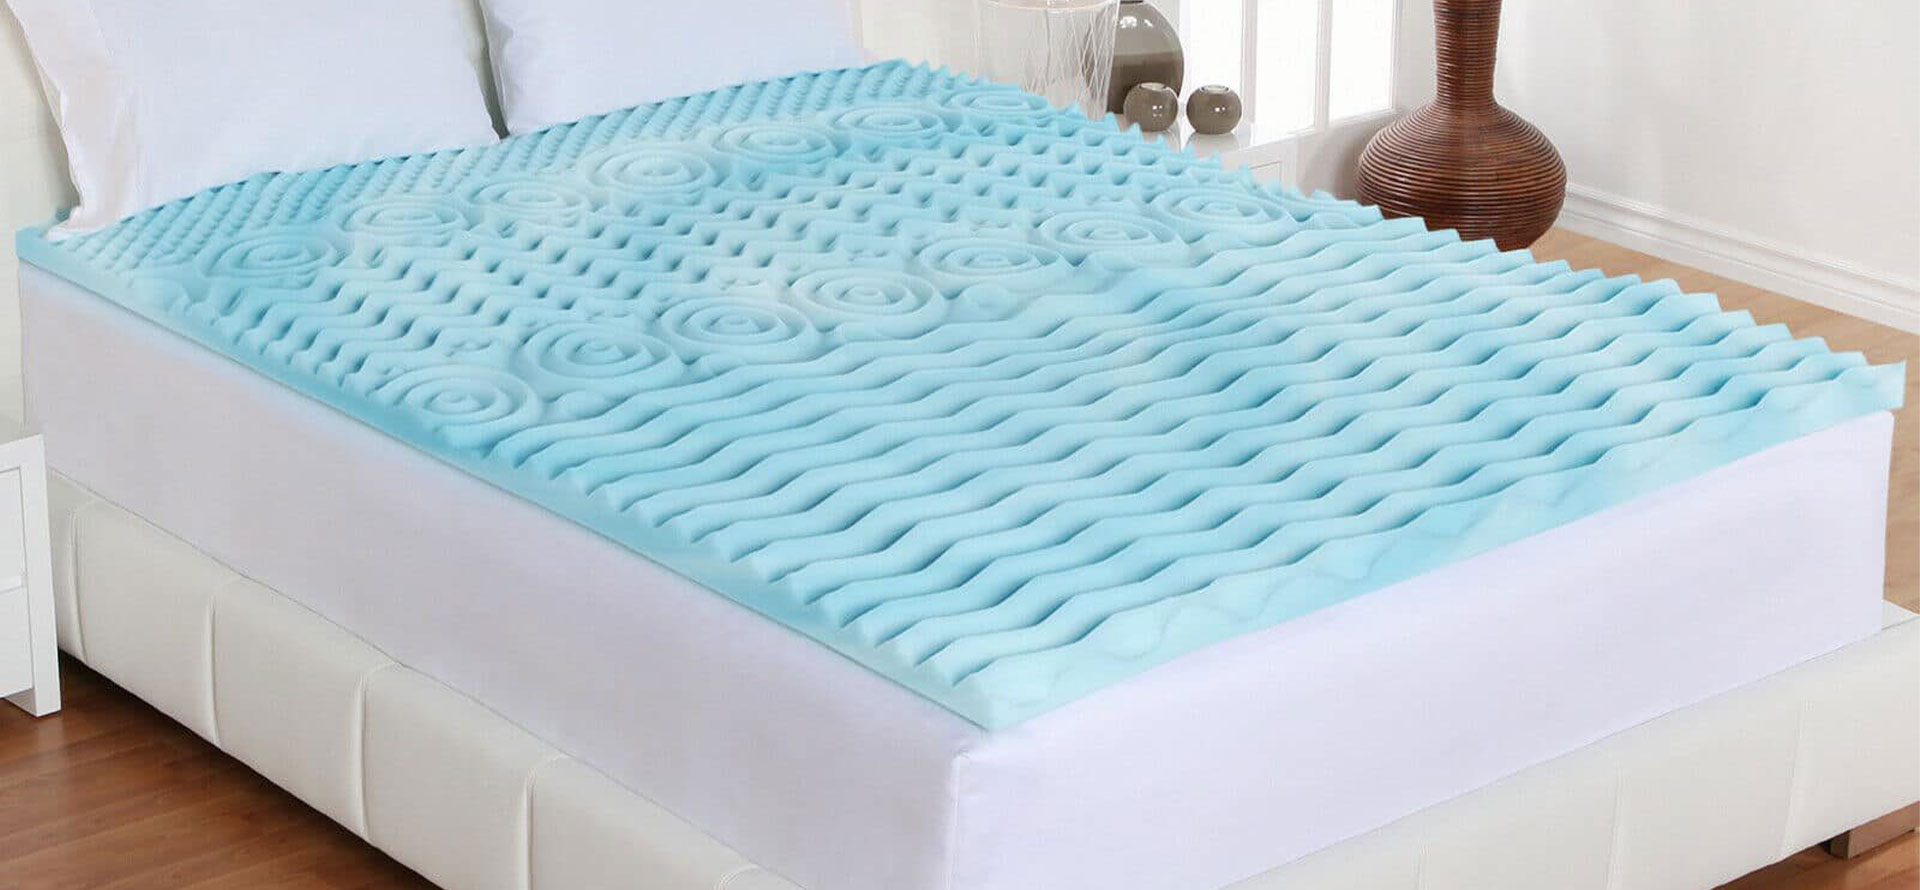 Cooling mattress topper blue.